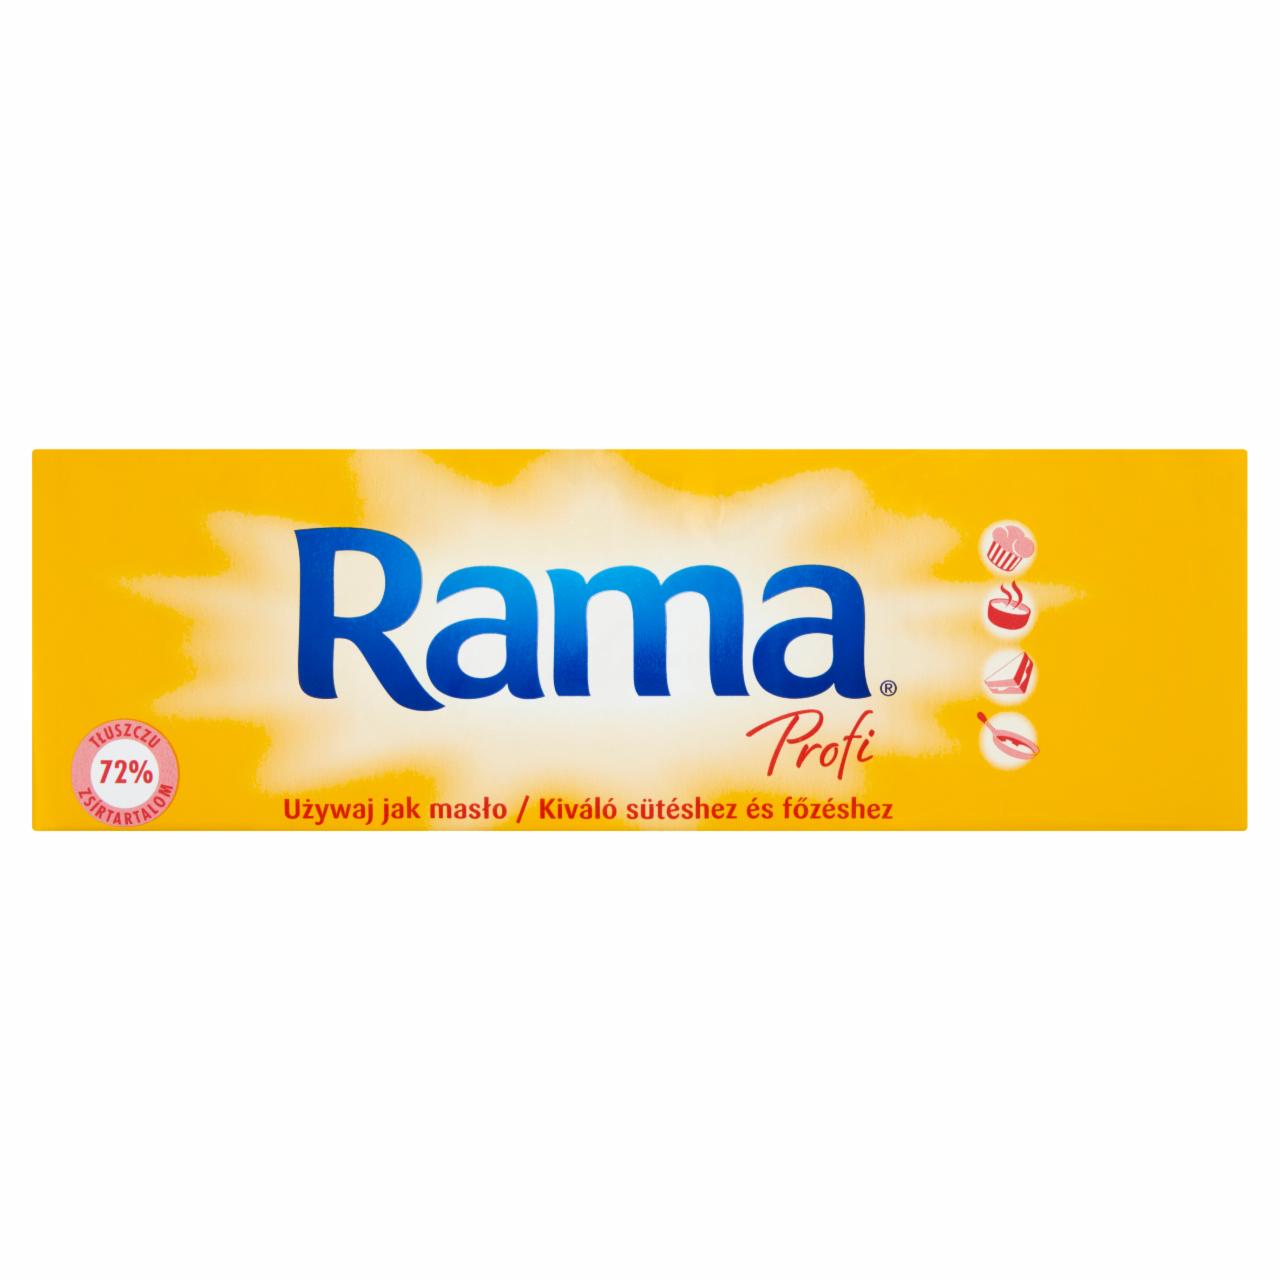 Képek - Rama Profi 72% zsírtartalmú margarin 1 kg